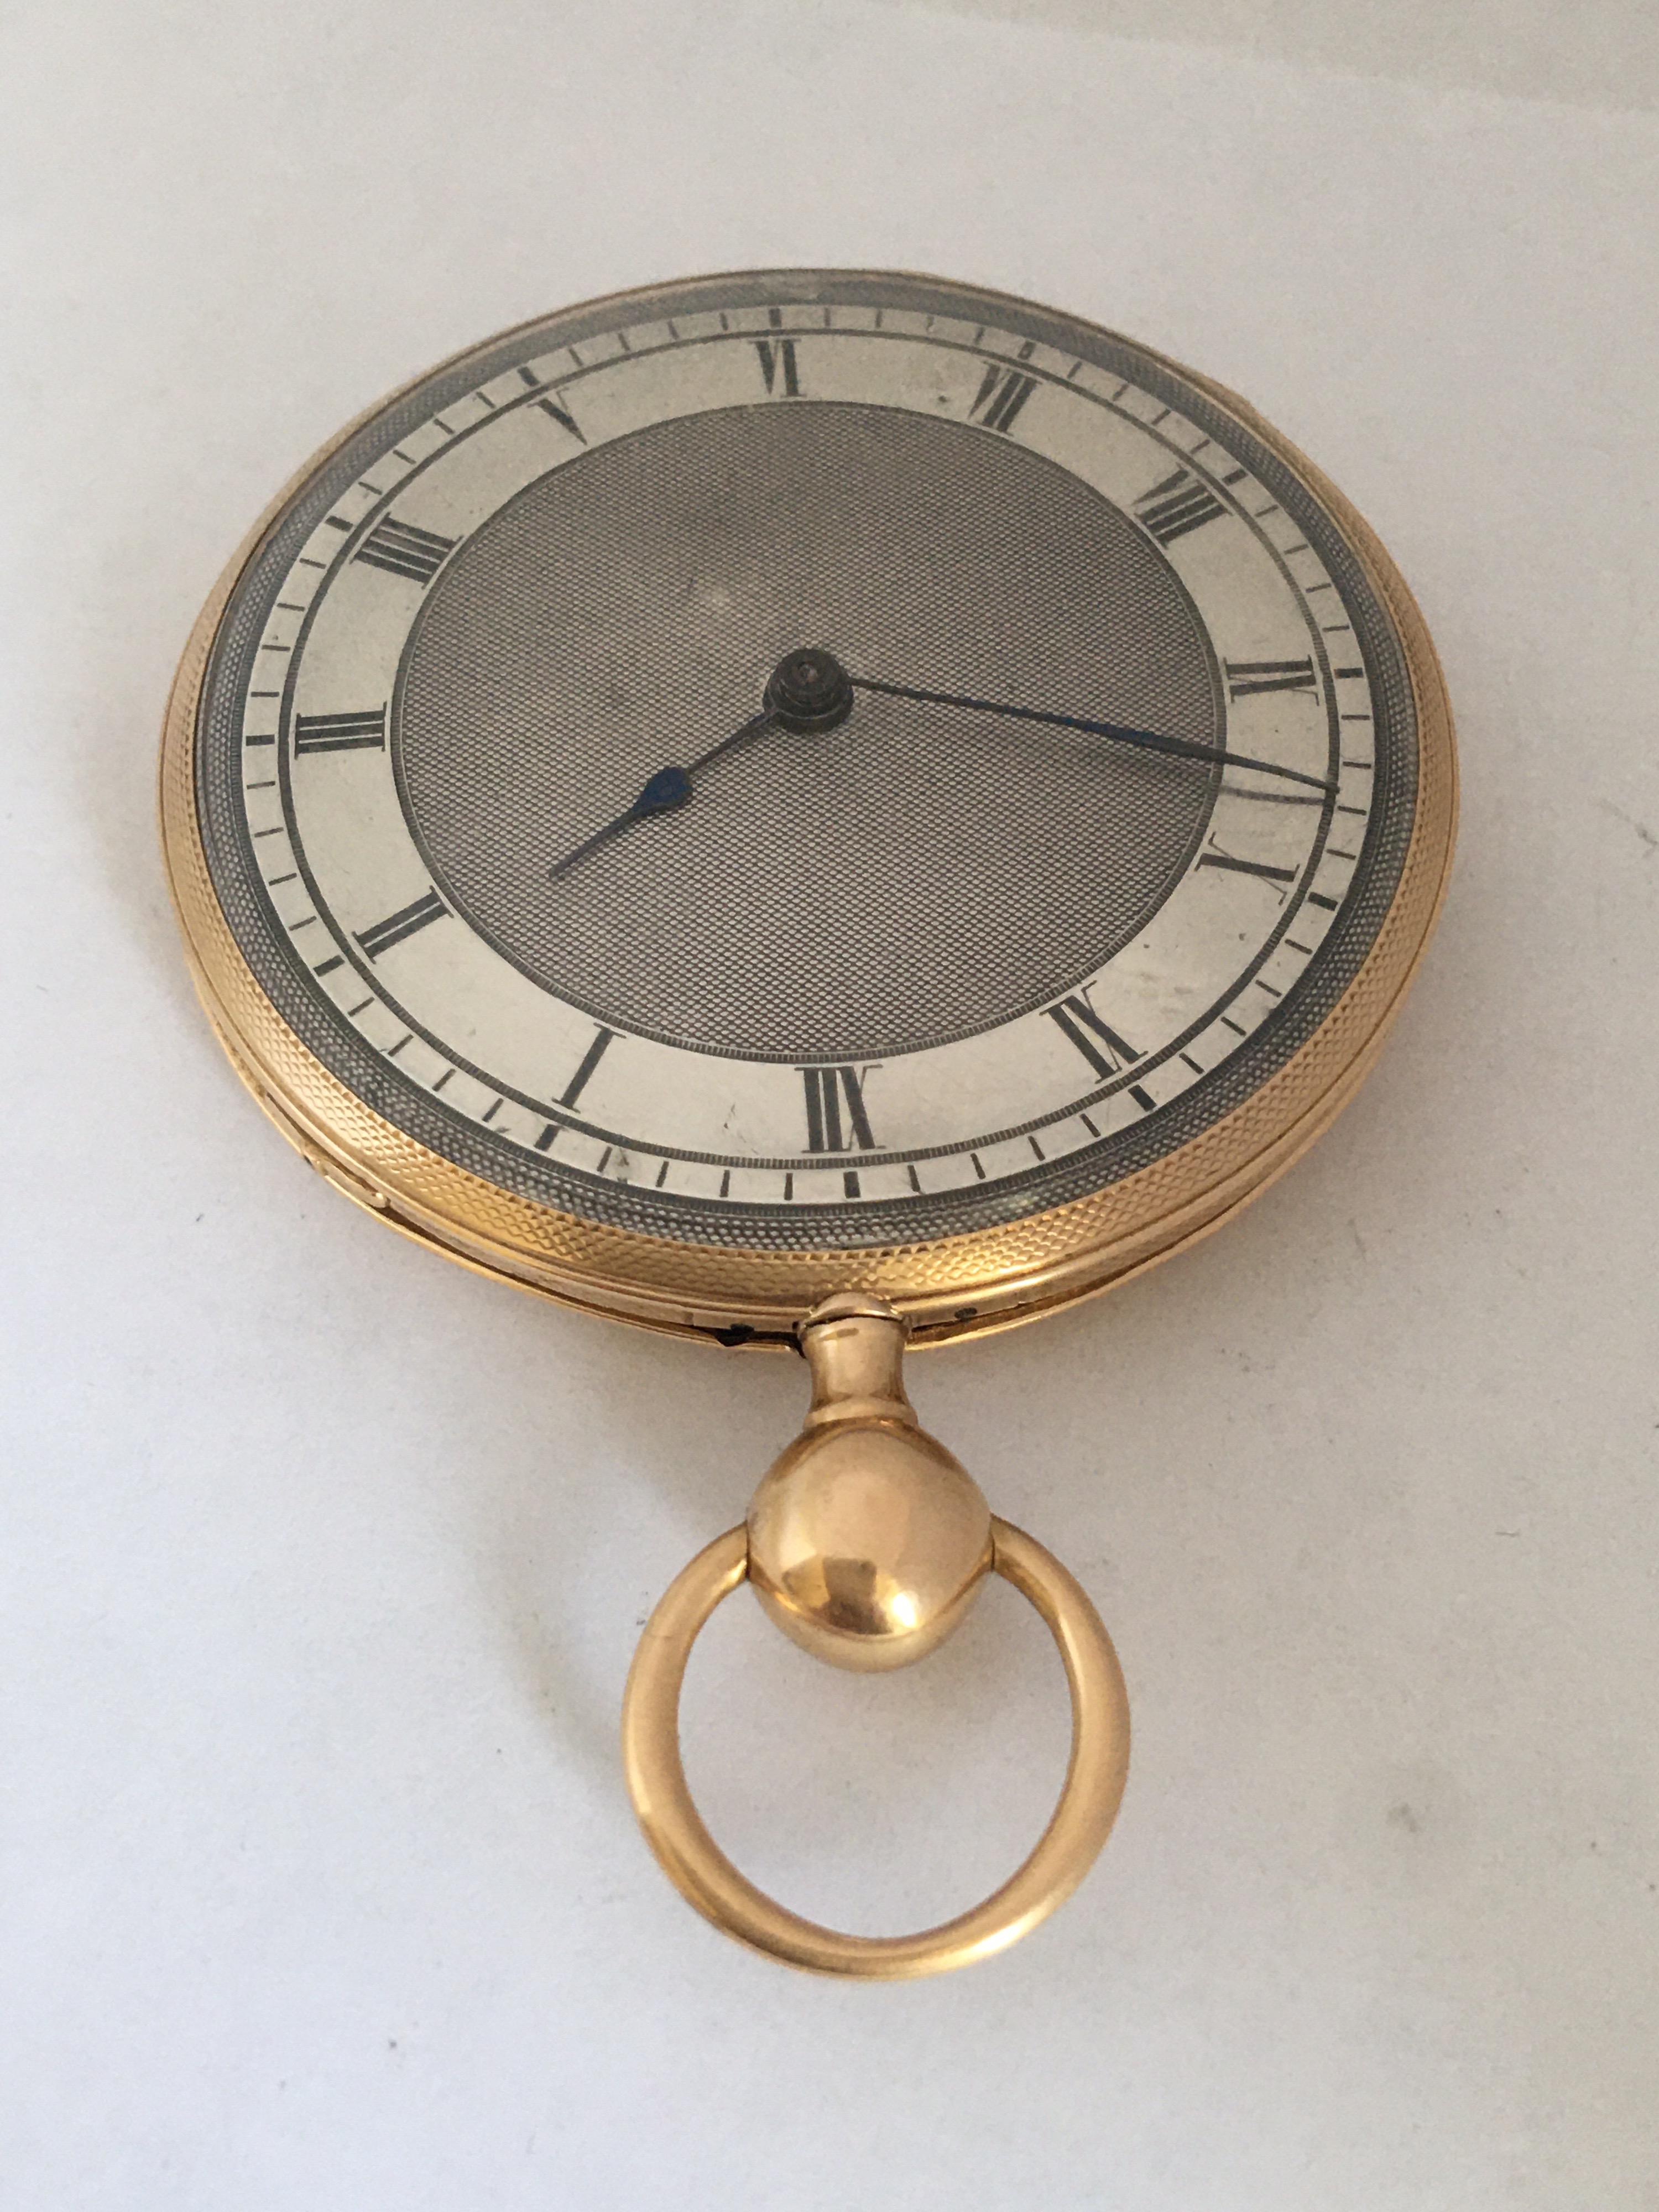 Antique Slim 18 Karat Gold Quarter Pump Repeating Pocket Watch For Sale 9